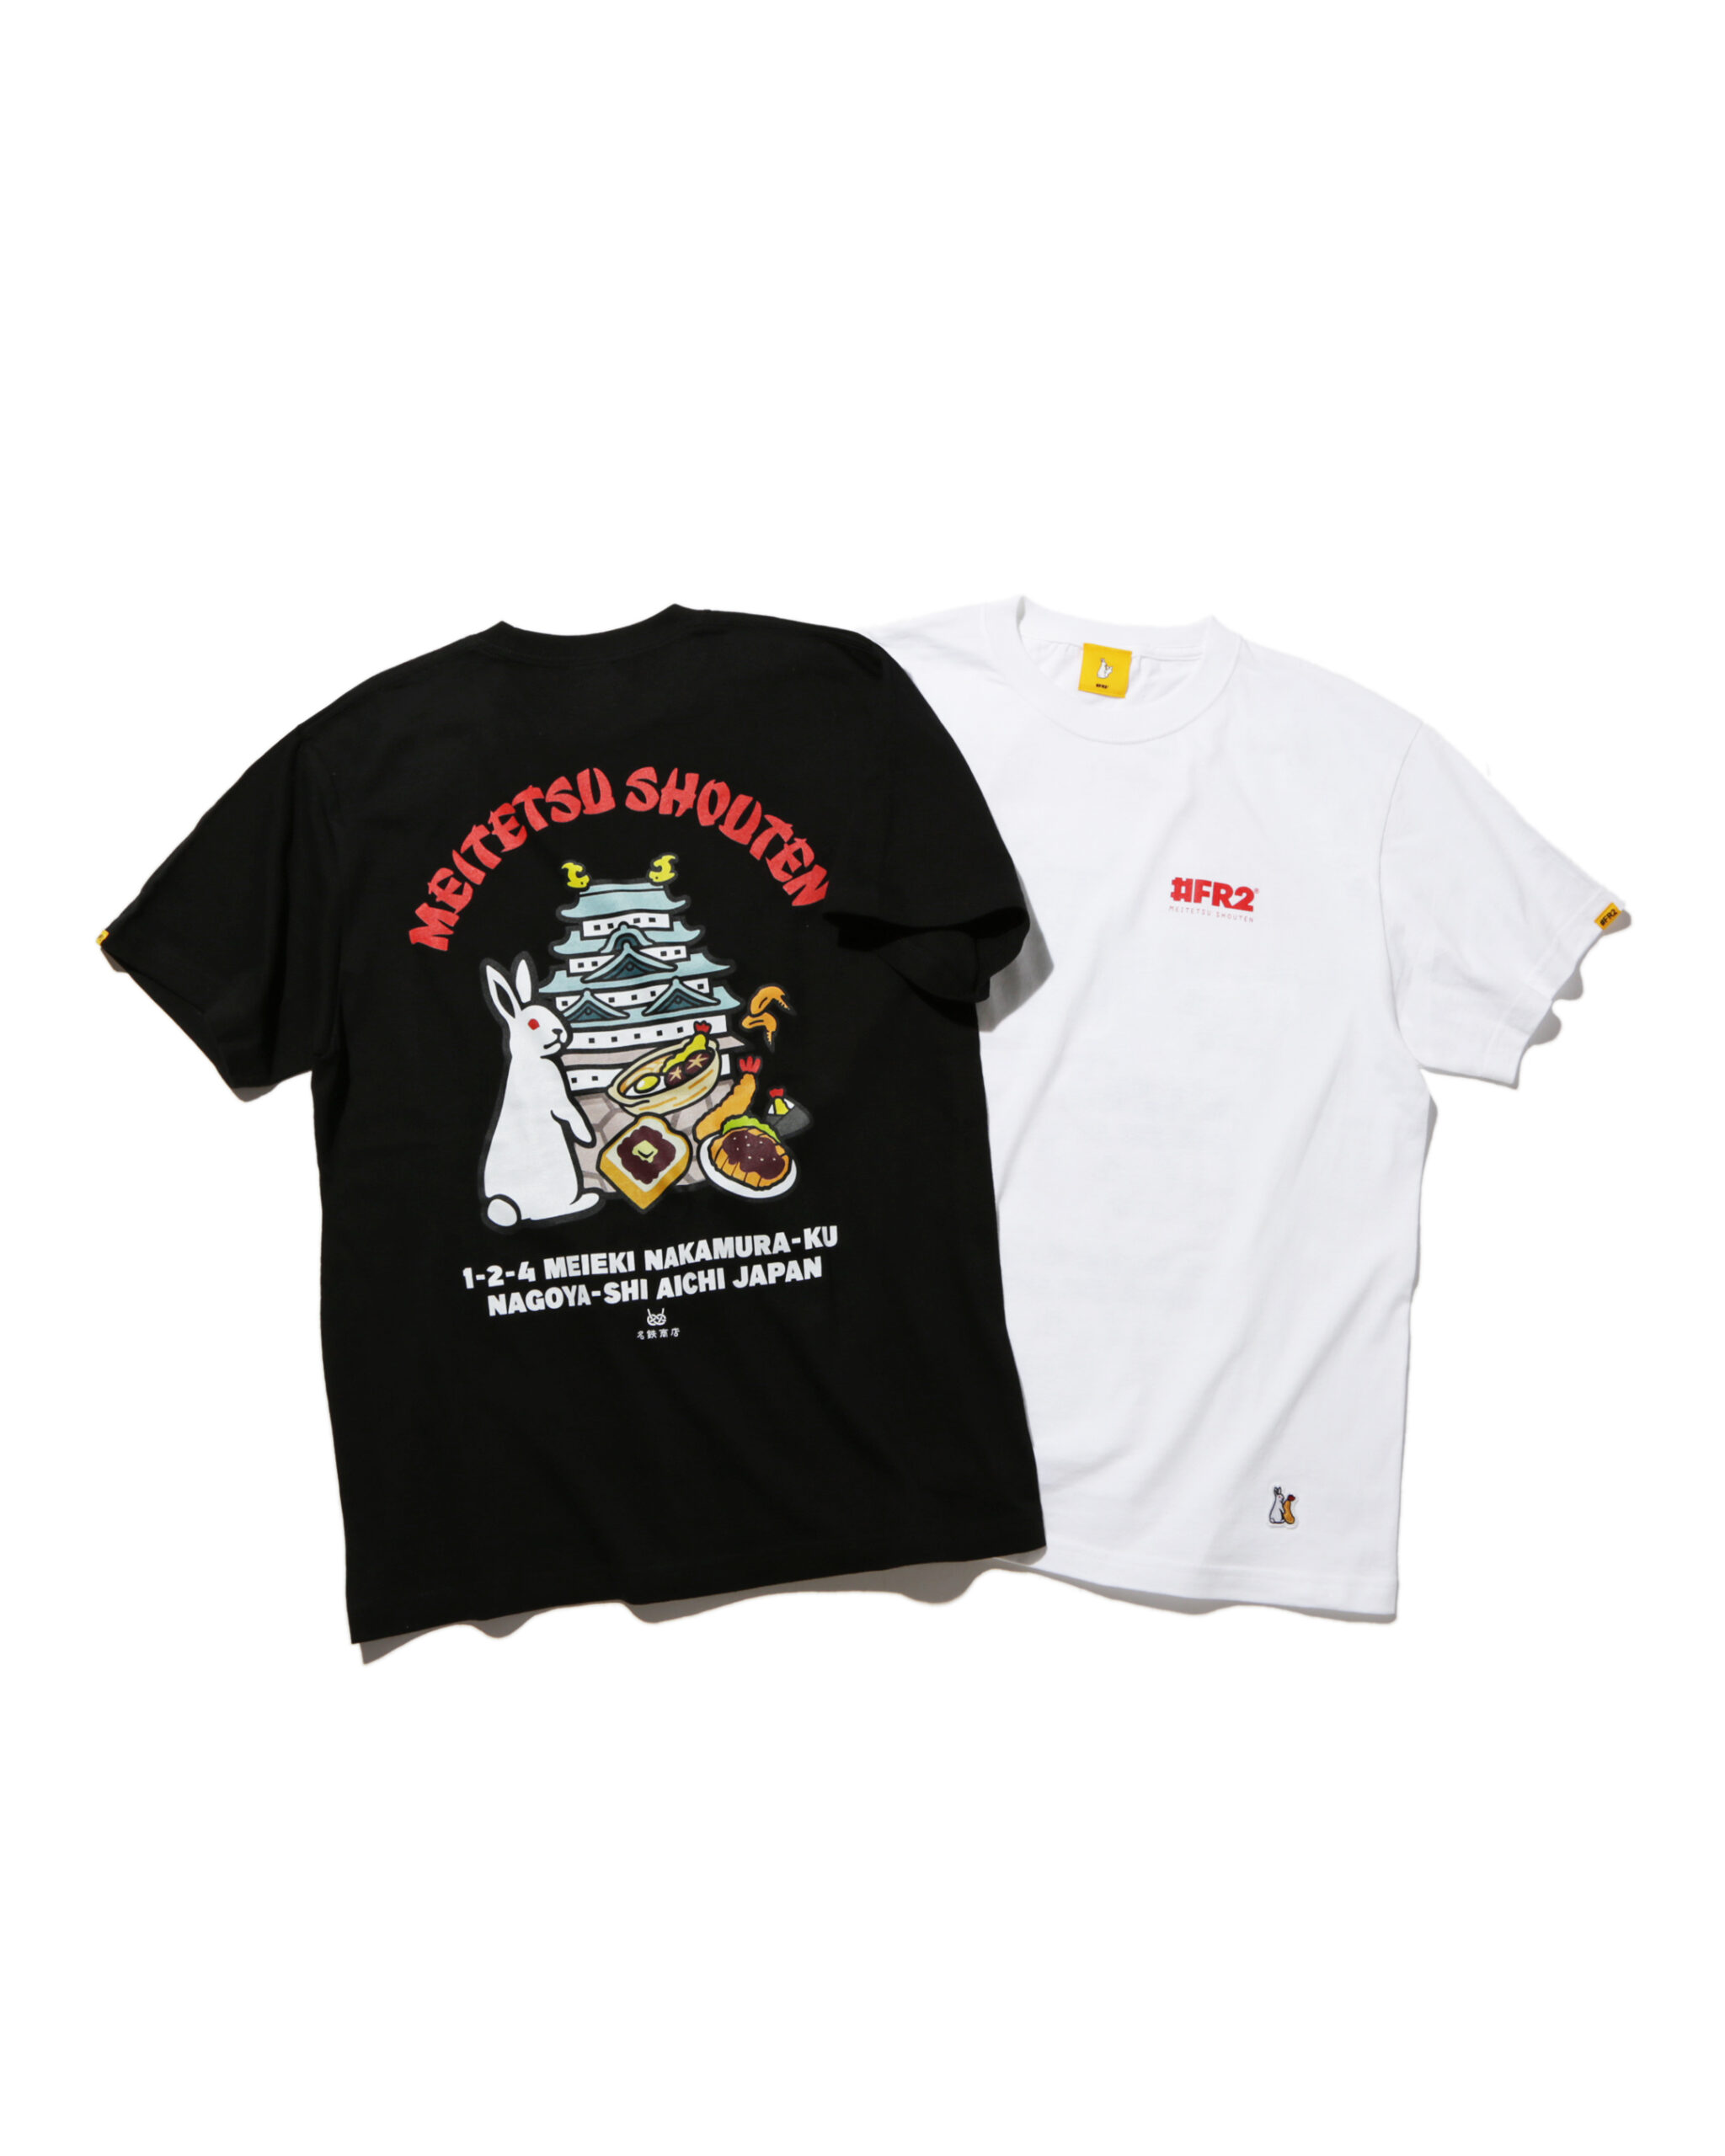 名鉄商店×＃FR2 Collaboration Original T-shirt - Tシャツ/カットソー